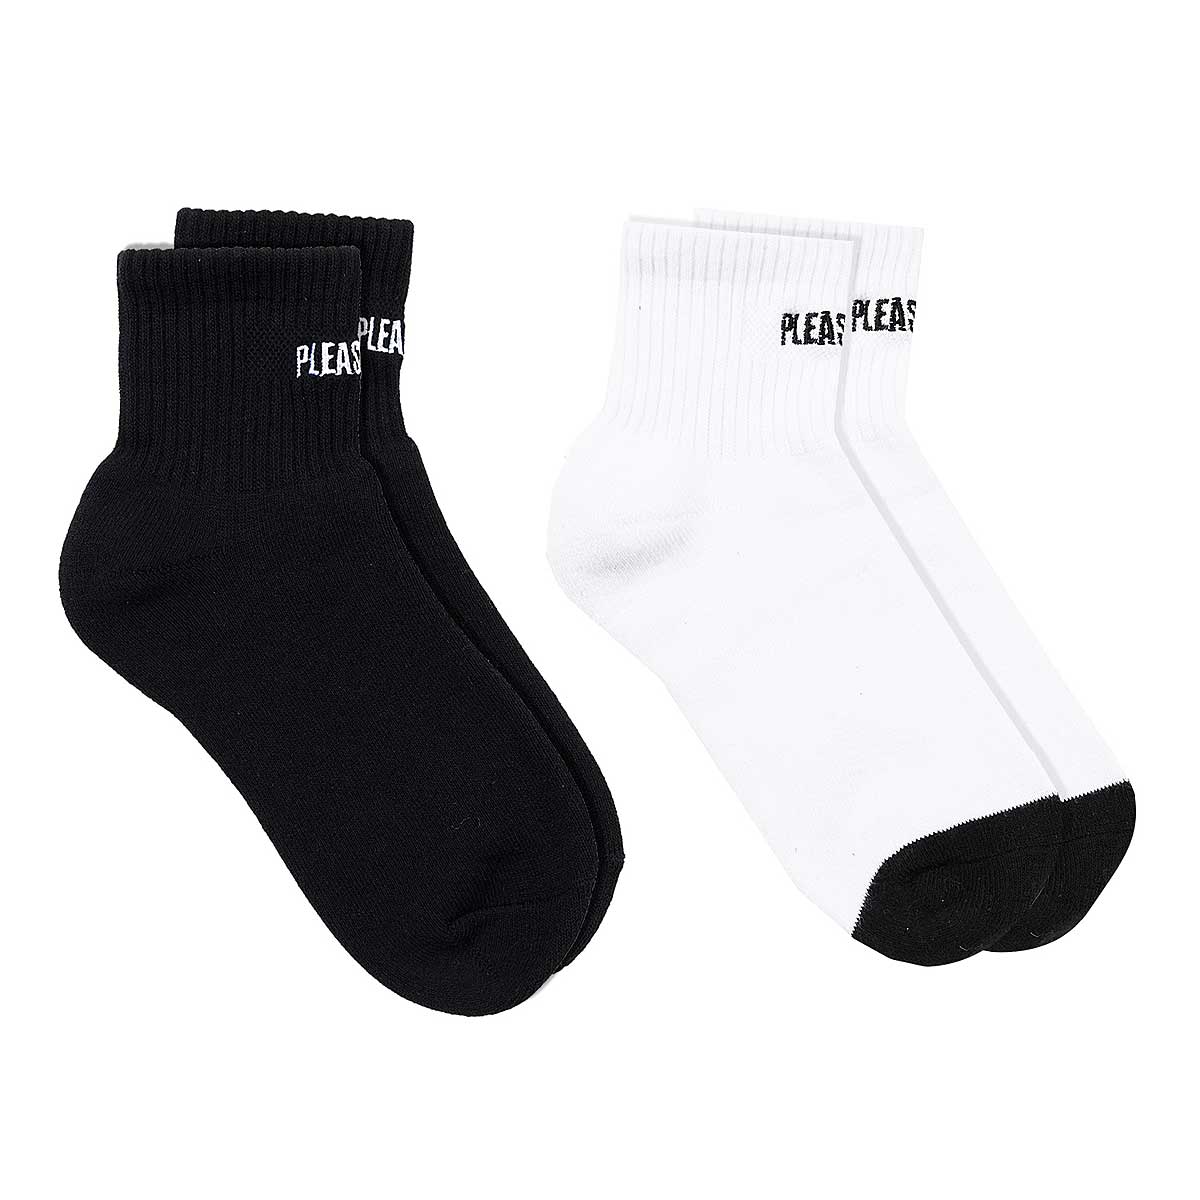 Pleasures Socks - 2 Pack, Black/White